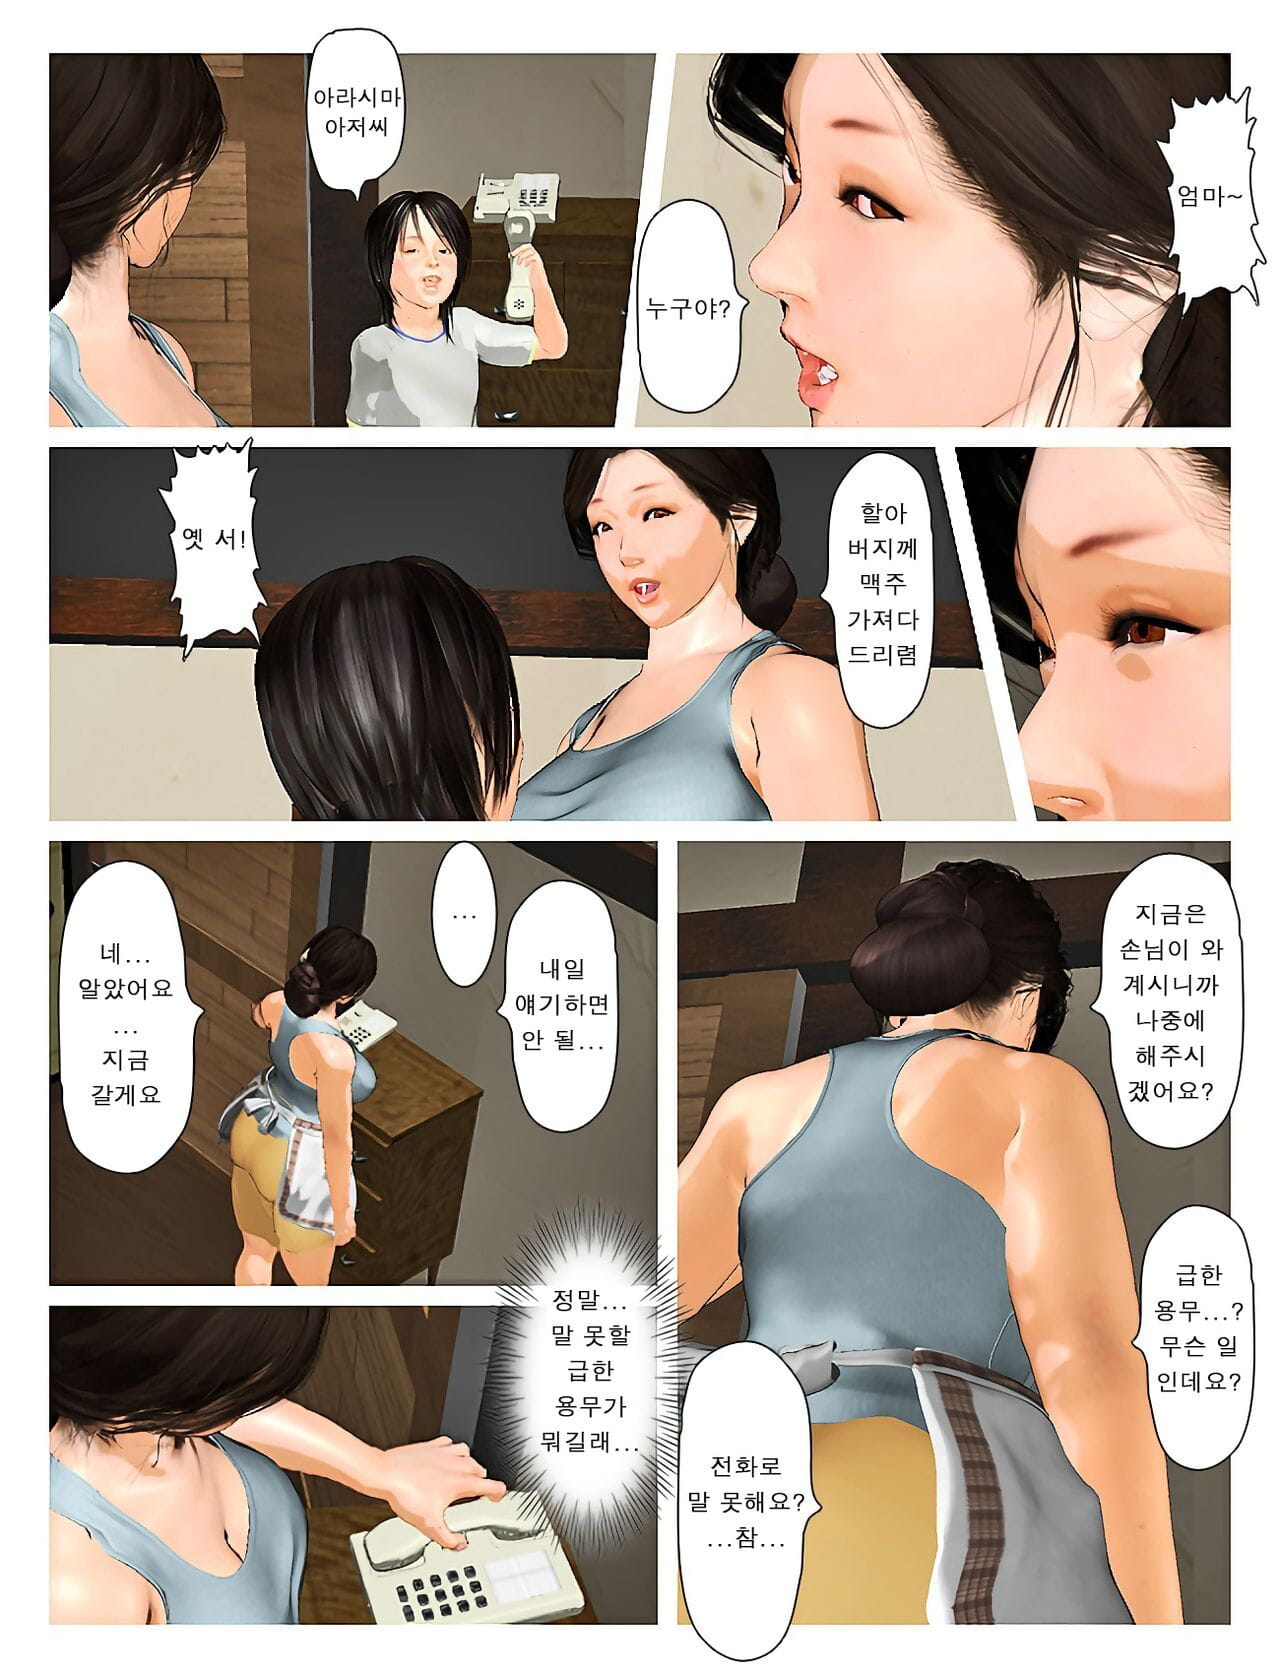 Kyou no Misako-san 2019:3 - 오늘의 미사코씨 2019:3 page 1